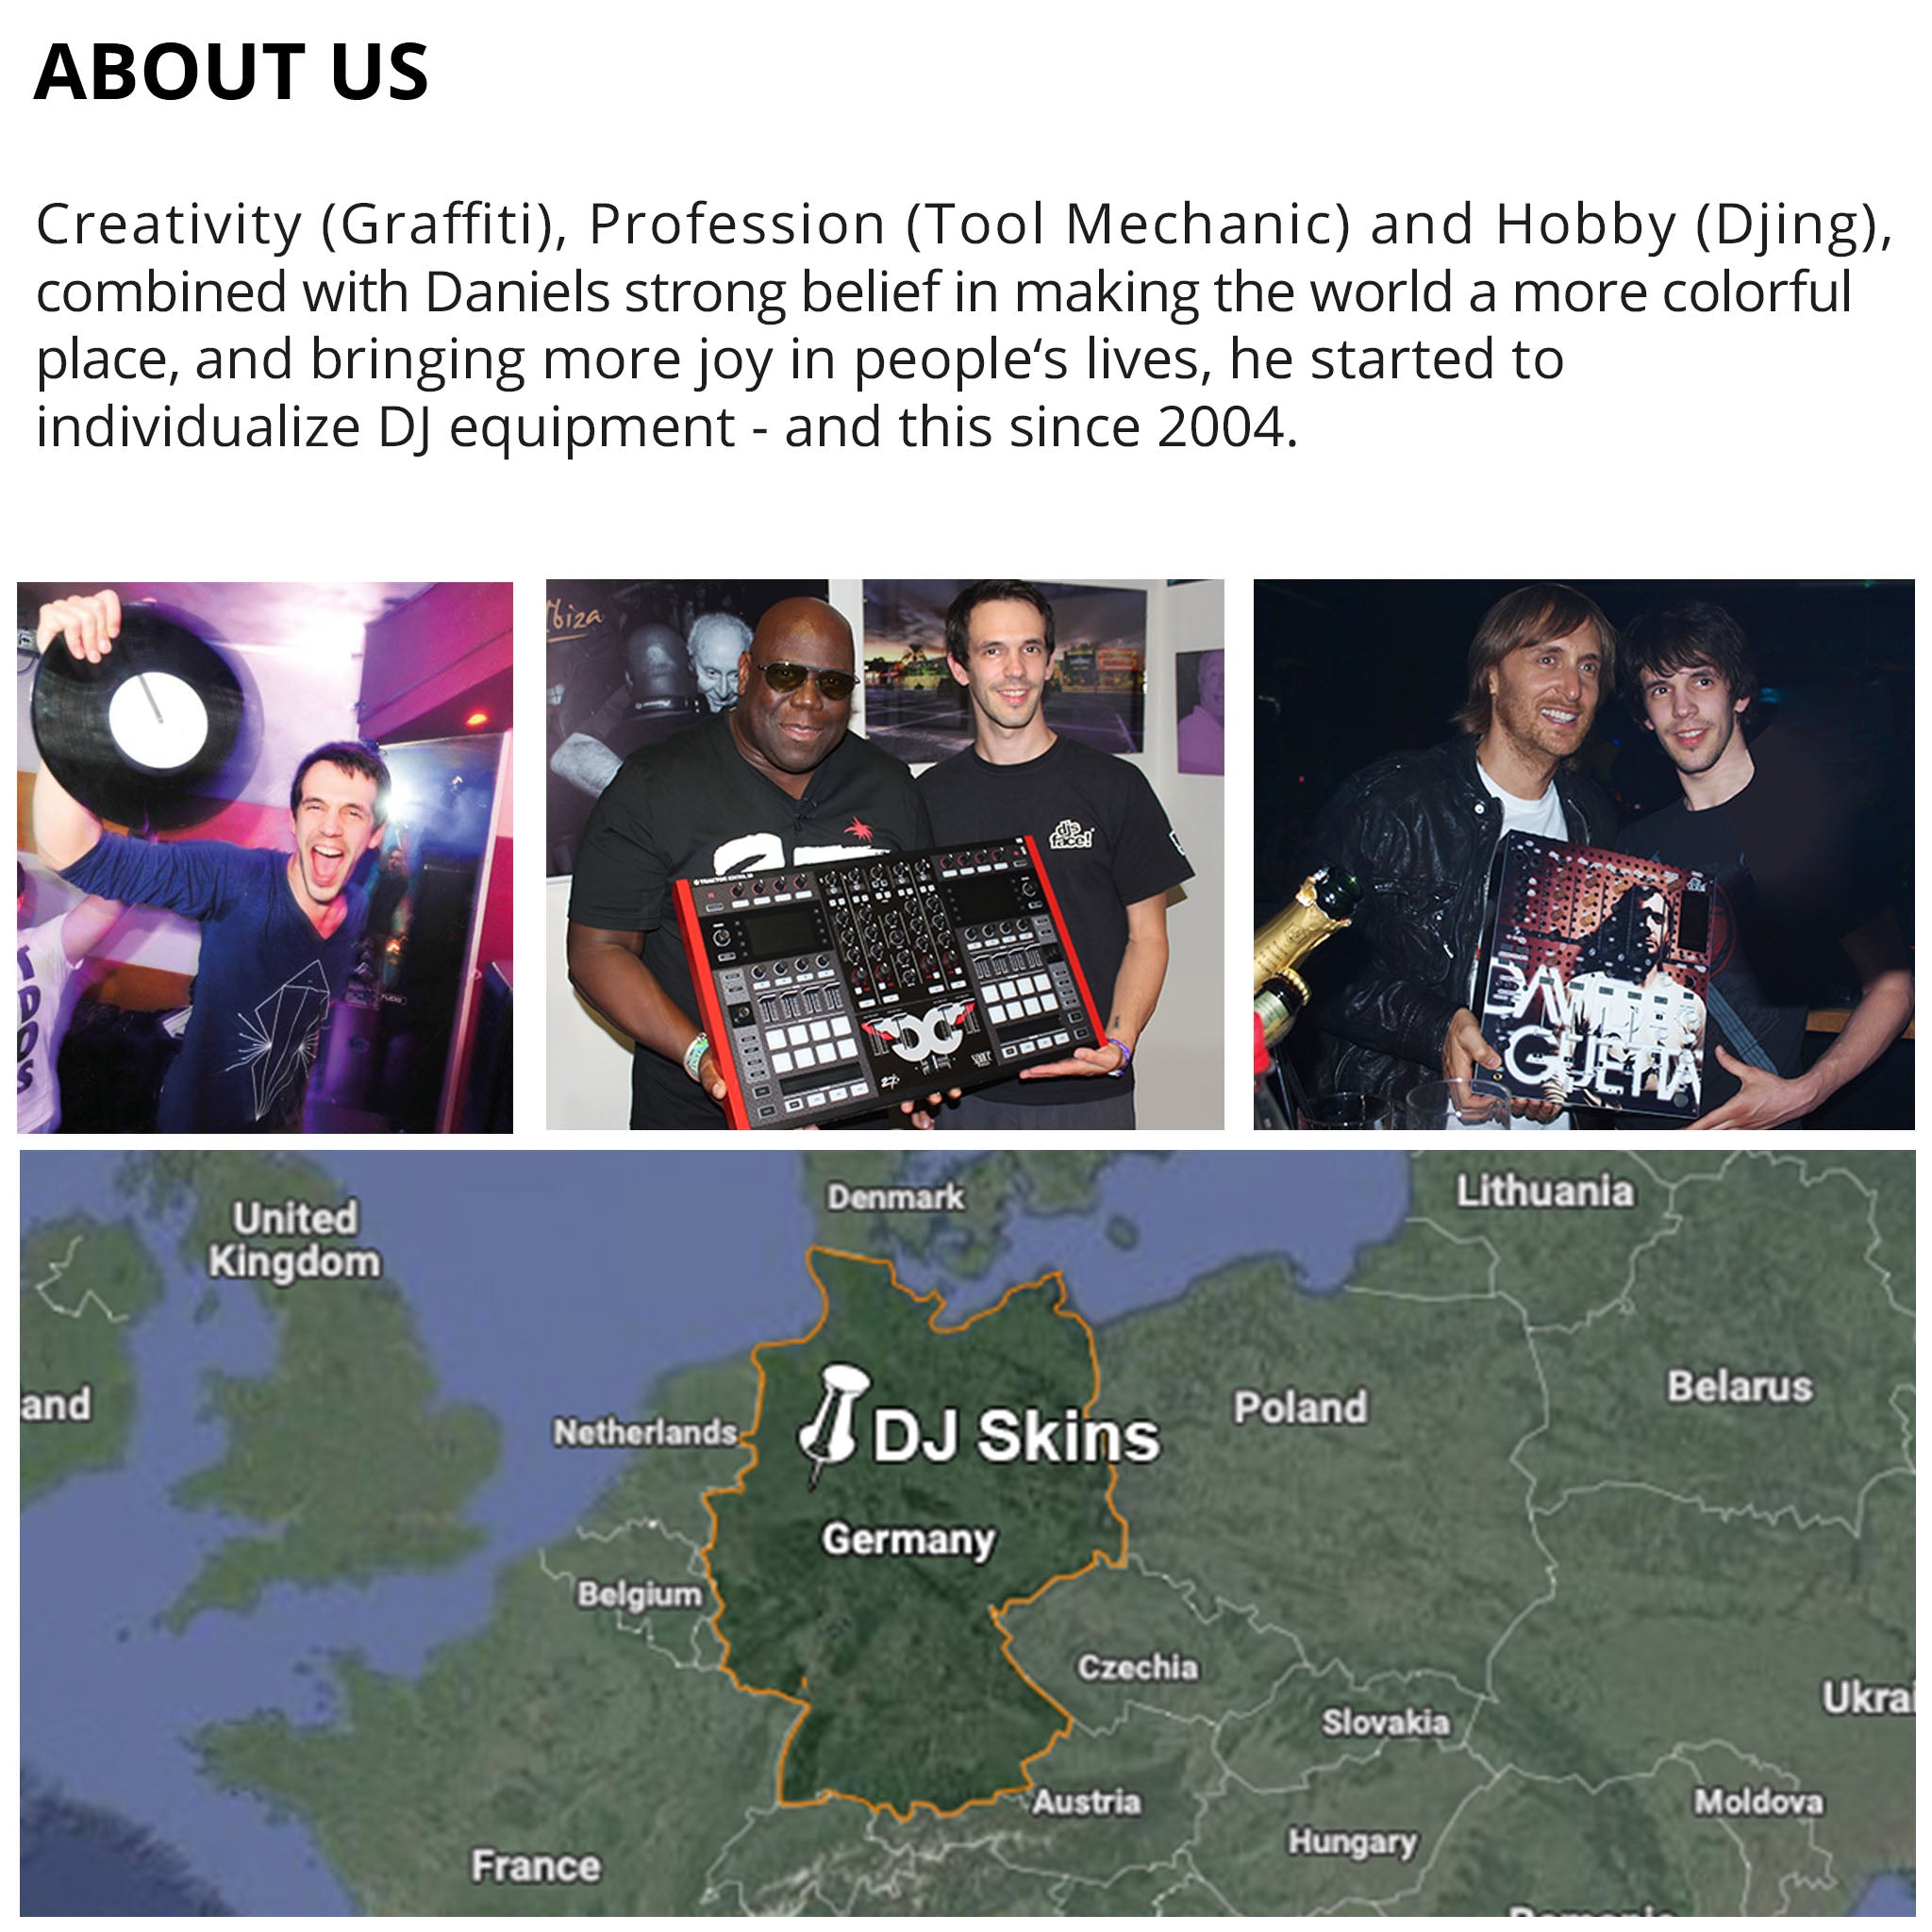 Pioneer DJ DDJ FLX6 Skin Reverb